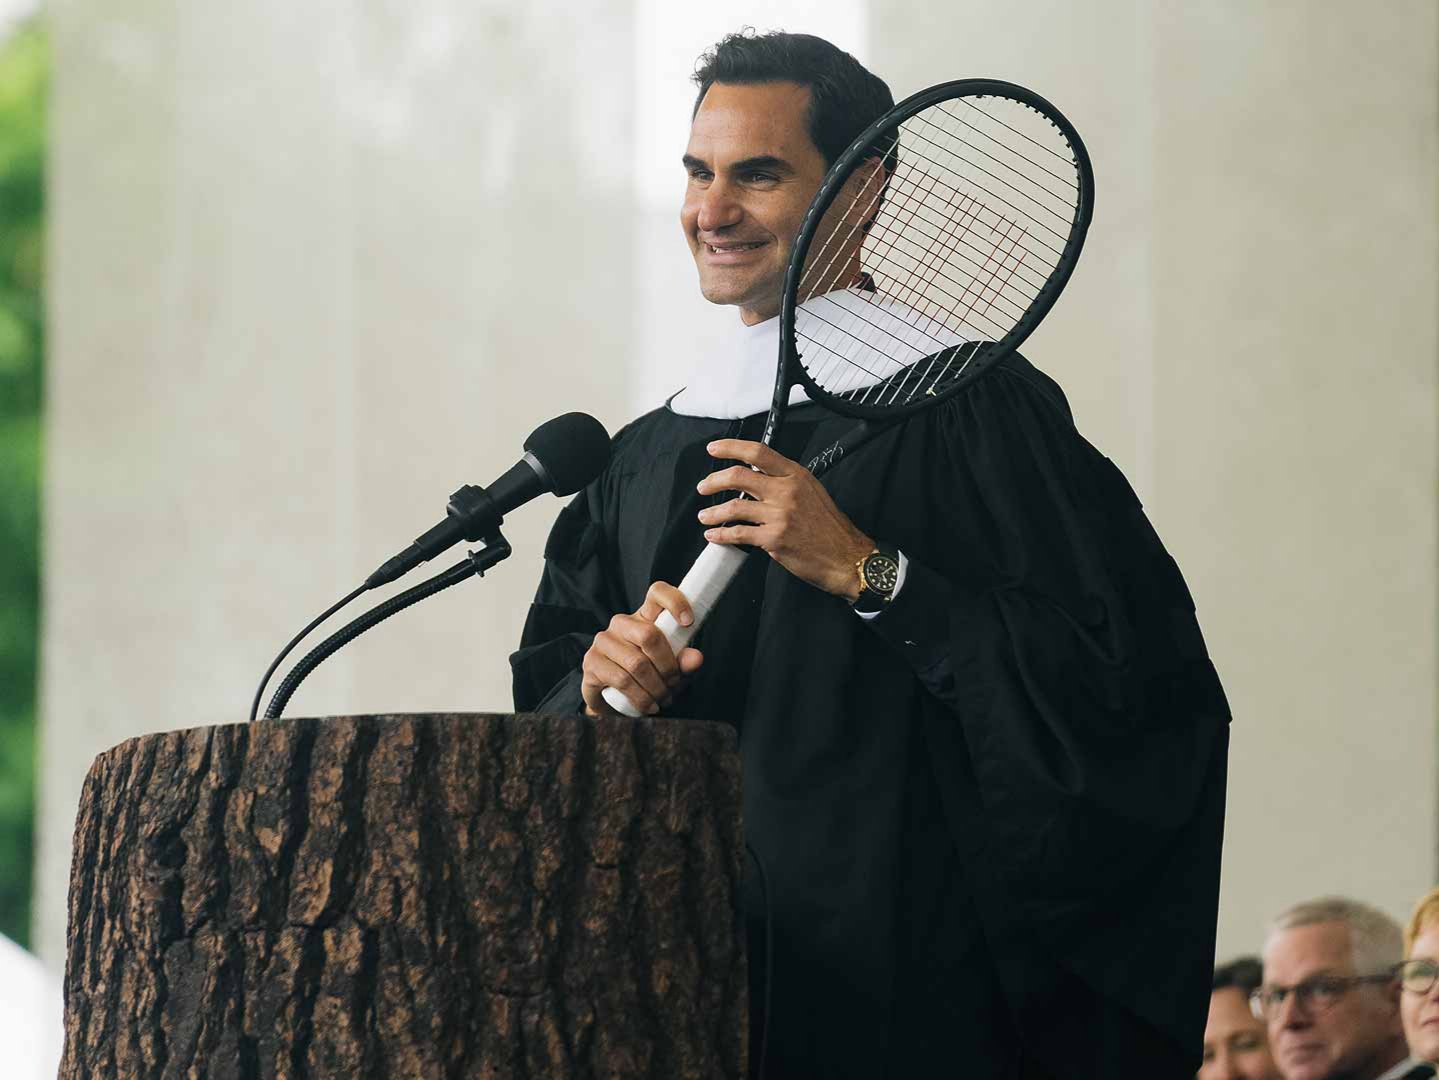 "Успехът без усилие е мит": Федерер изнесе реч пред студенти и вече е доктор по литература (видео) width=